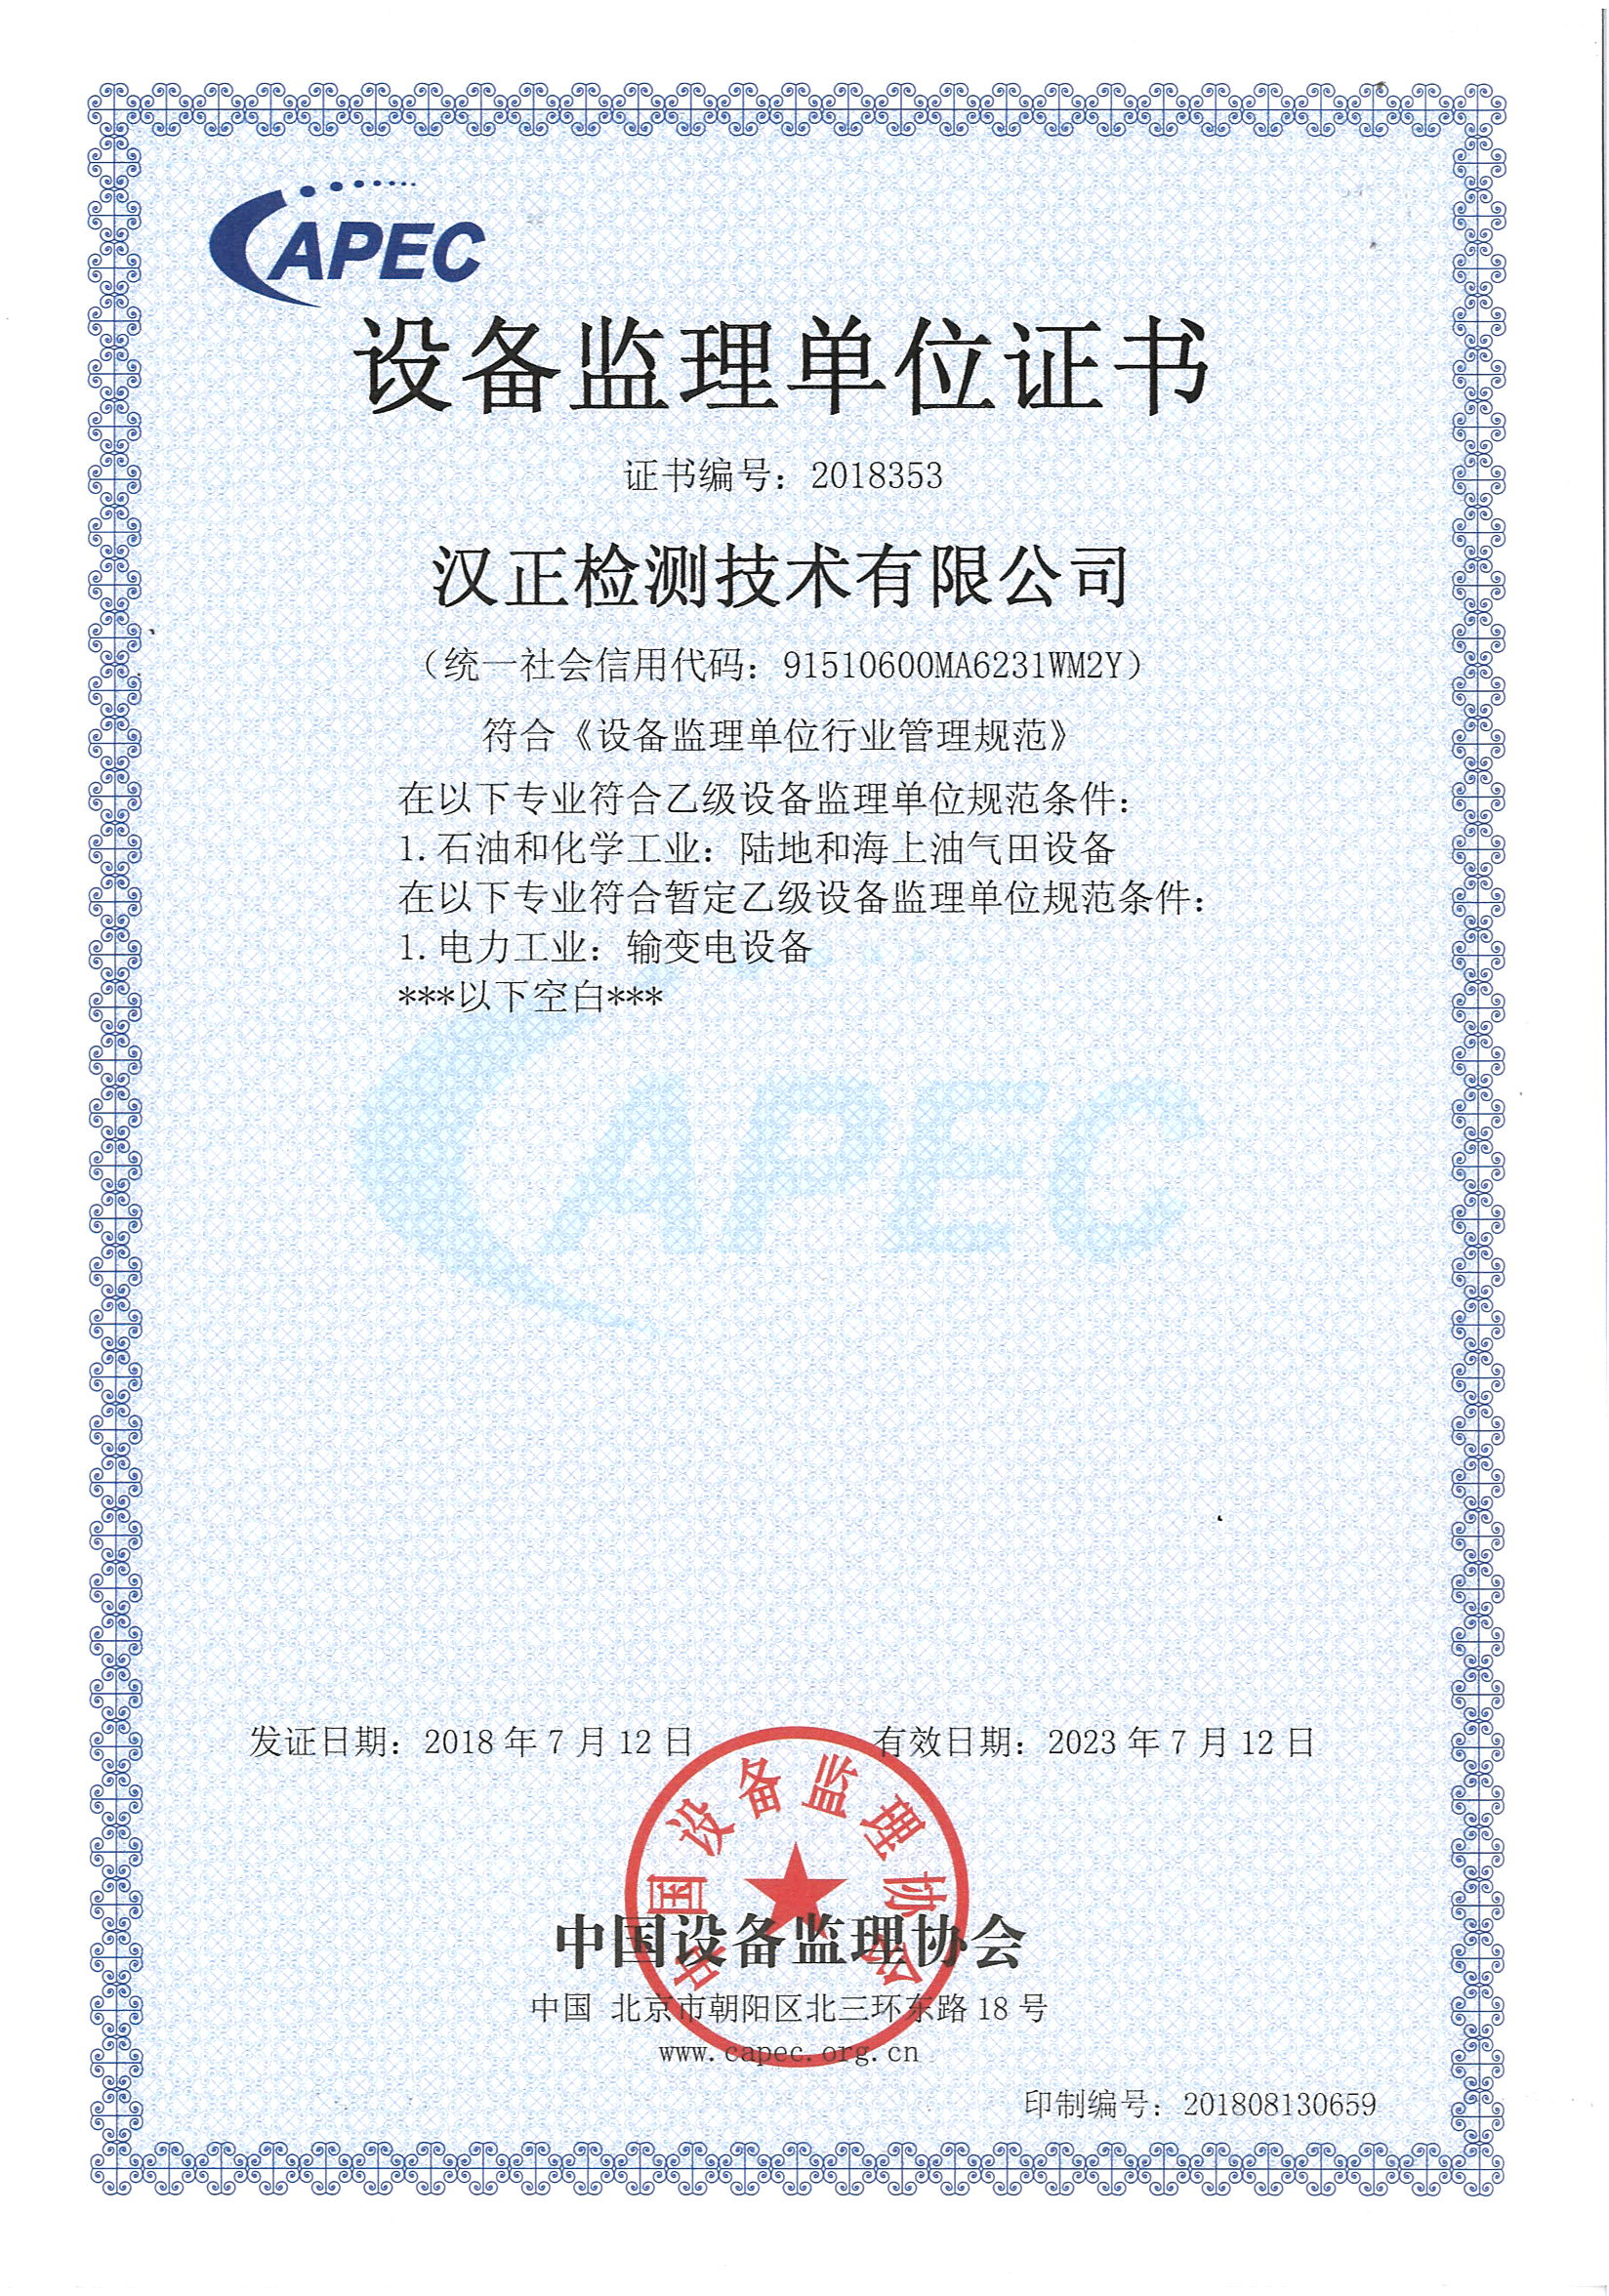 汉正检测喜获《中国设备监理单位证书》